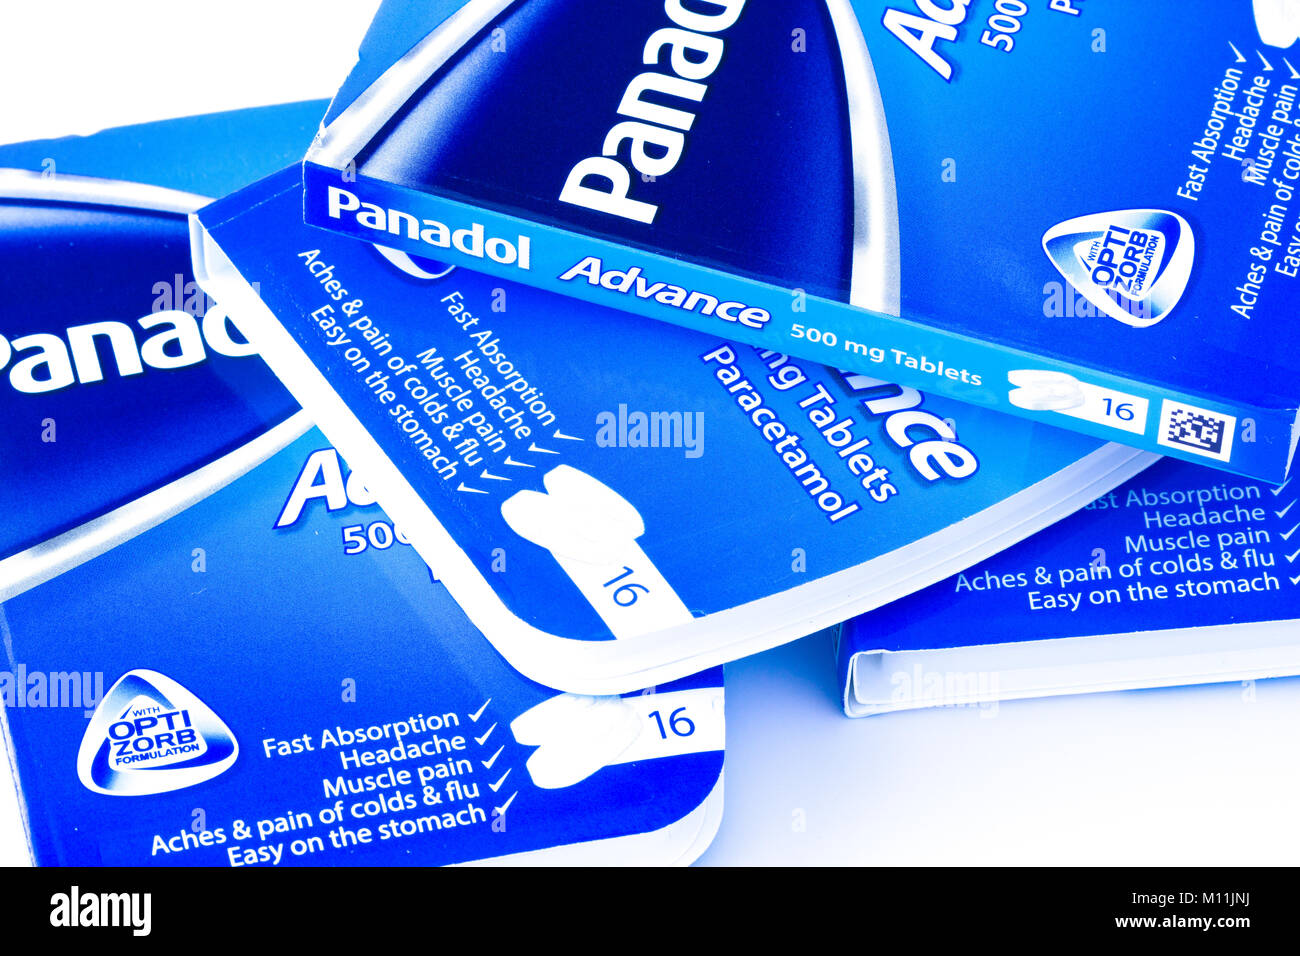 Foto von Paketen von Panadol Advance, einem schnell absorbierenden Paracetamol-Schmerzmittel, Großbritannien Stockfoto